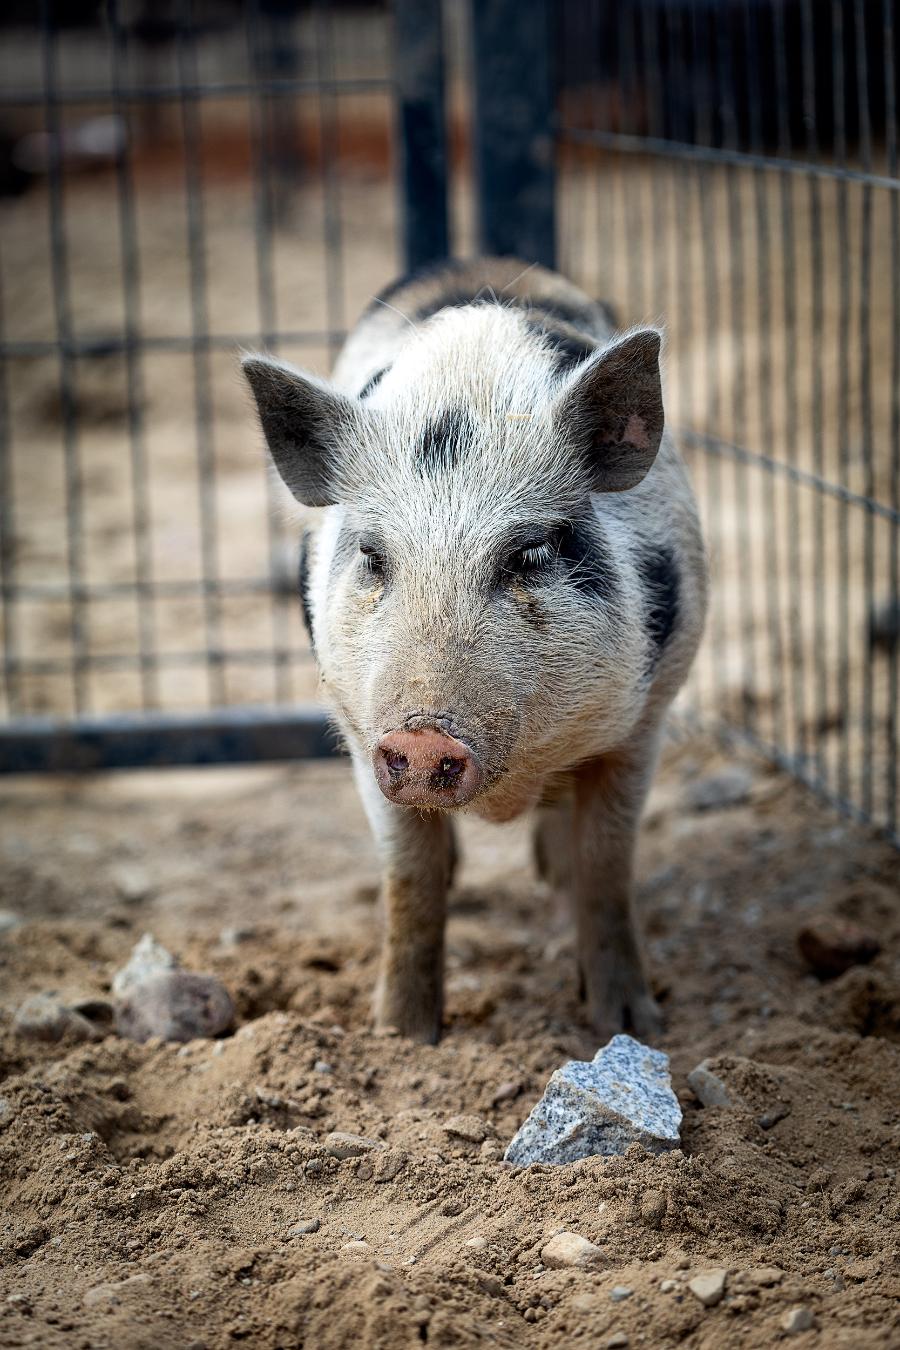 W „Chrumkowie” pod Toruniem żyje obecnie 85 świń. To miejsce jest otwarte dla zwiedzających w weekendy. Można przyjechać i poznać bliżej te zwierzęta, a nawet zostać wirtualnym rodzicem. (Fot. proksaphotography.com)